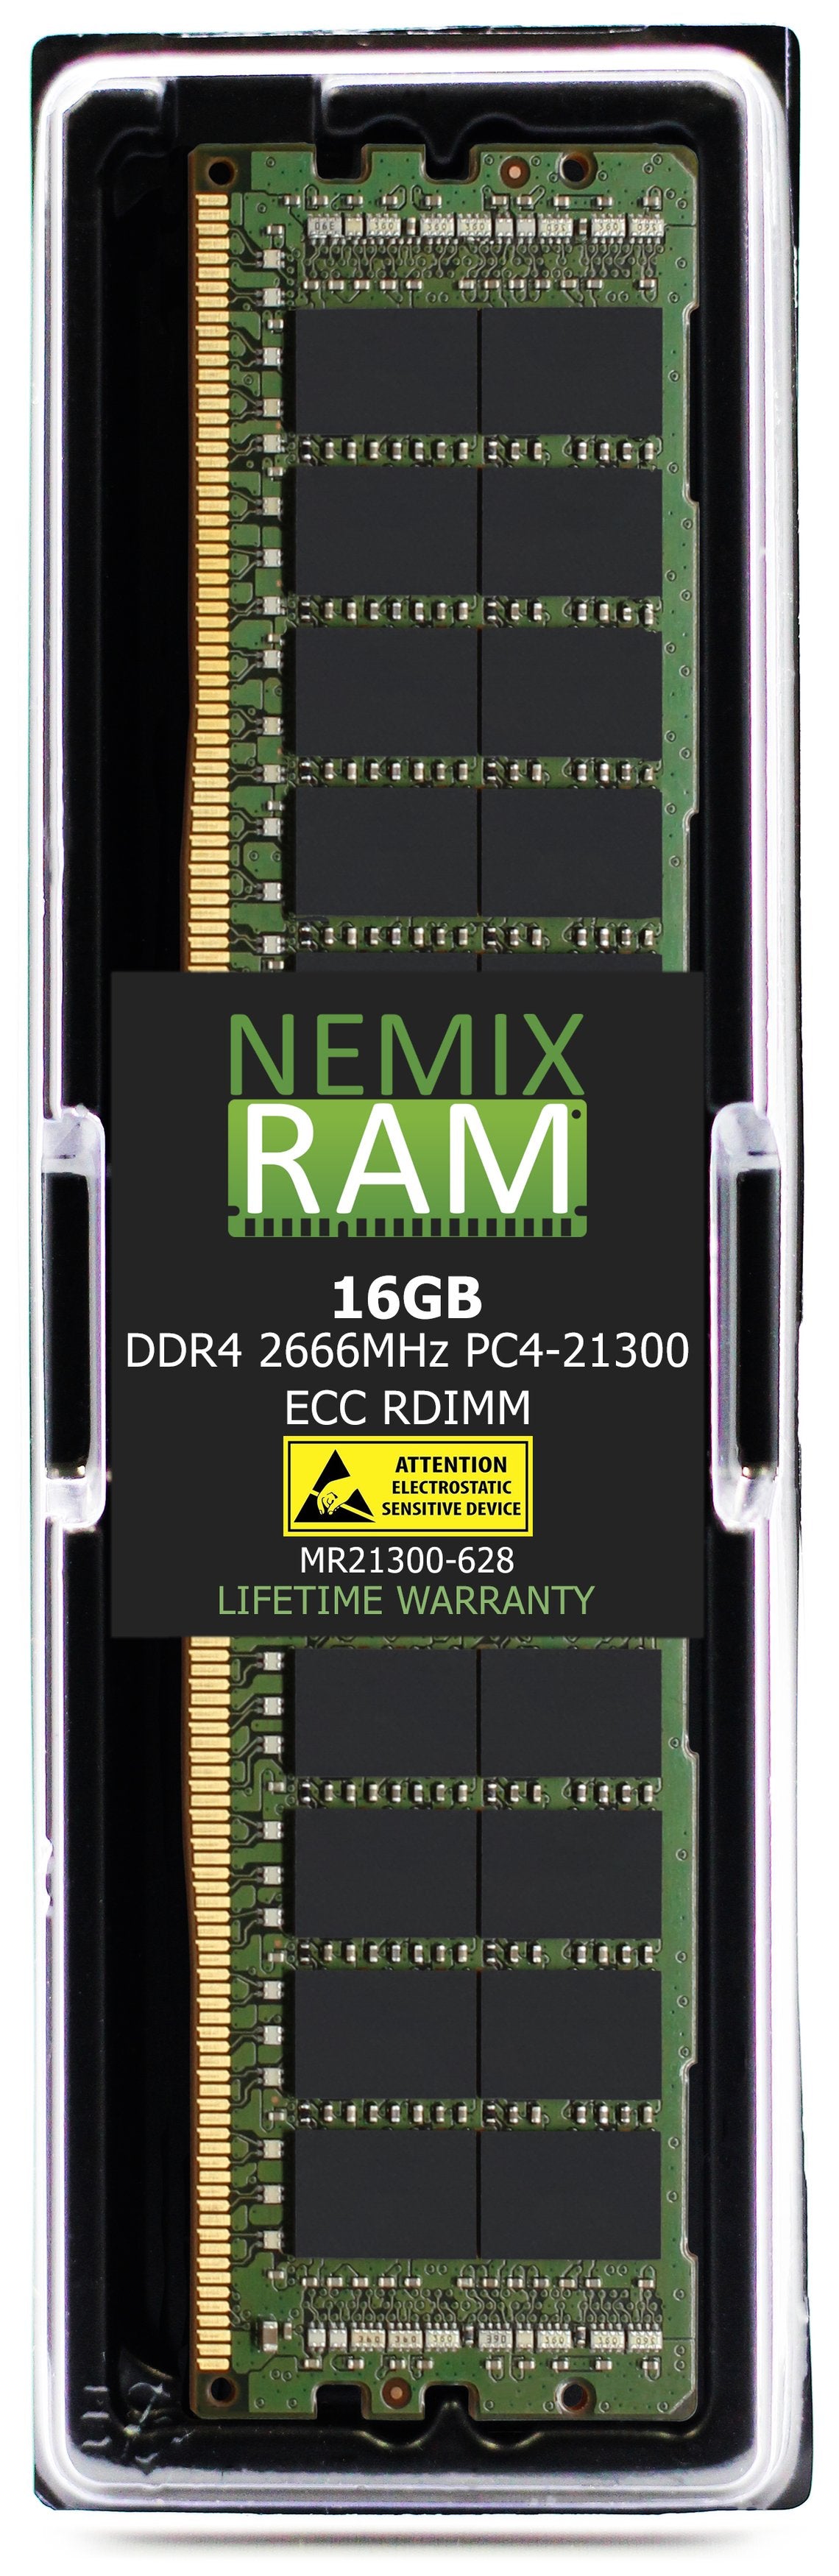 Hynix HMA82GR7DJR8N-VK 16GB DDR4 2666MHZ PC4-21300 RDIMM Compatible Memory Module